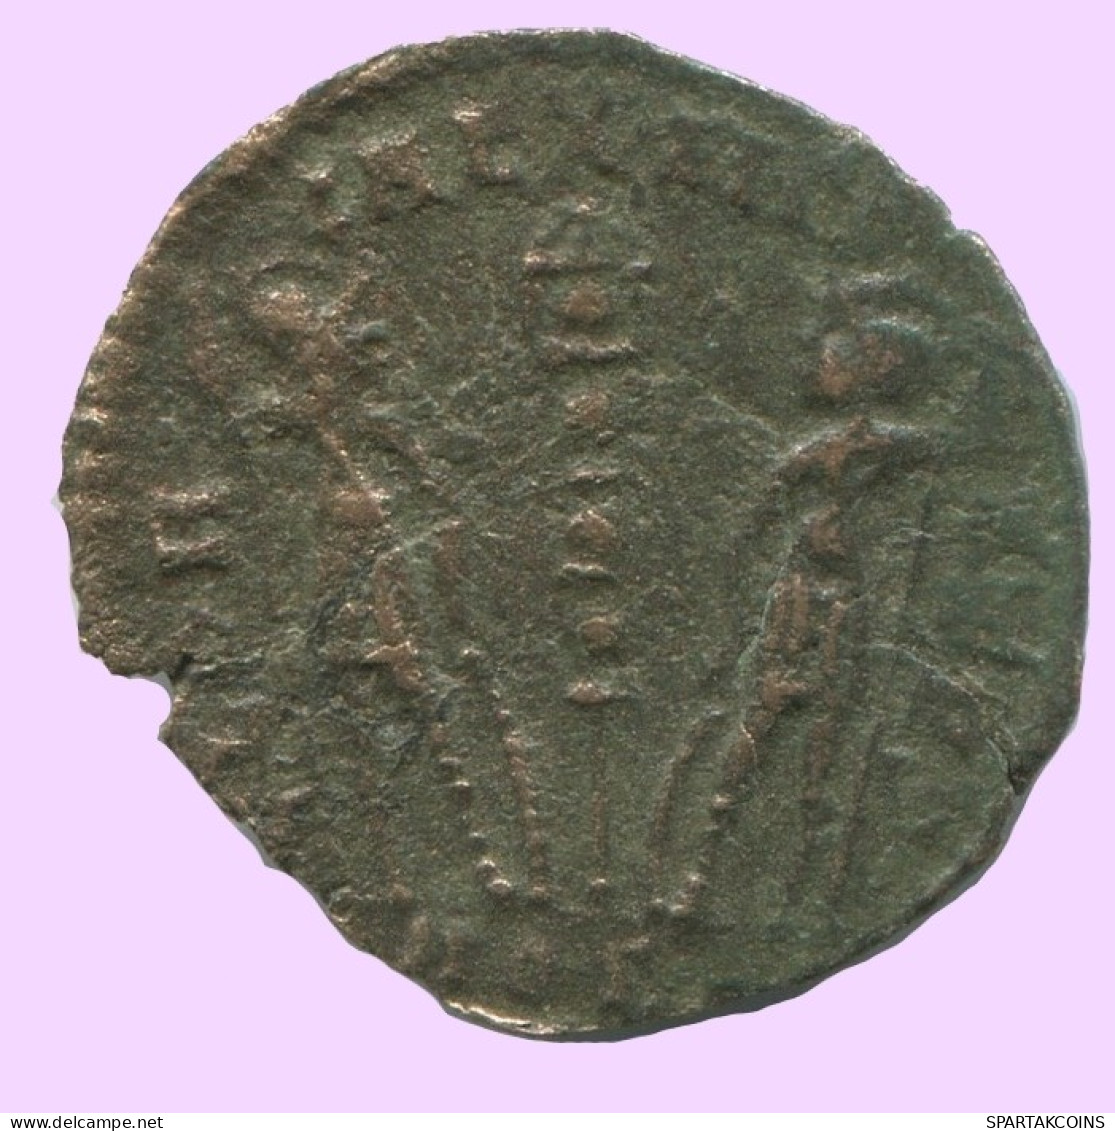 LATE ROMAN EMPIRE Follis Ancient Authentic Roman Coin 0.9g/16mm #ANT2018.7.U.A - The End Of Empire (363 AD Tot 476 AD)